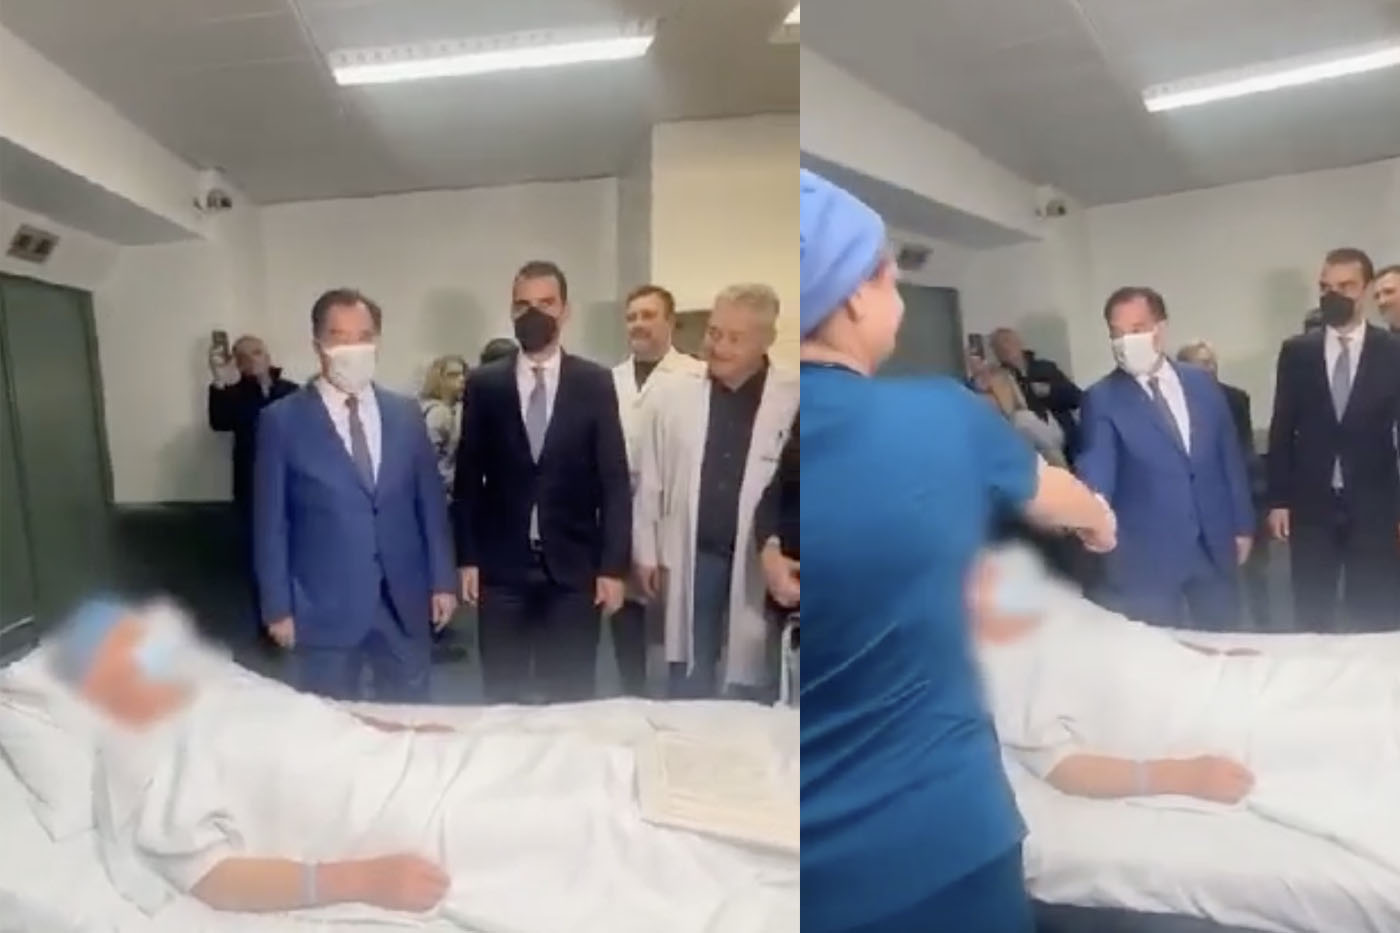 Γεωργιάδης: «Ήταν με τη συναίνεσή του» απαντά για τη φωτογραφία με τον ασθενή που υποβλήθηκε πρώτος σε απογευματινό χειρουργείο